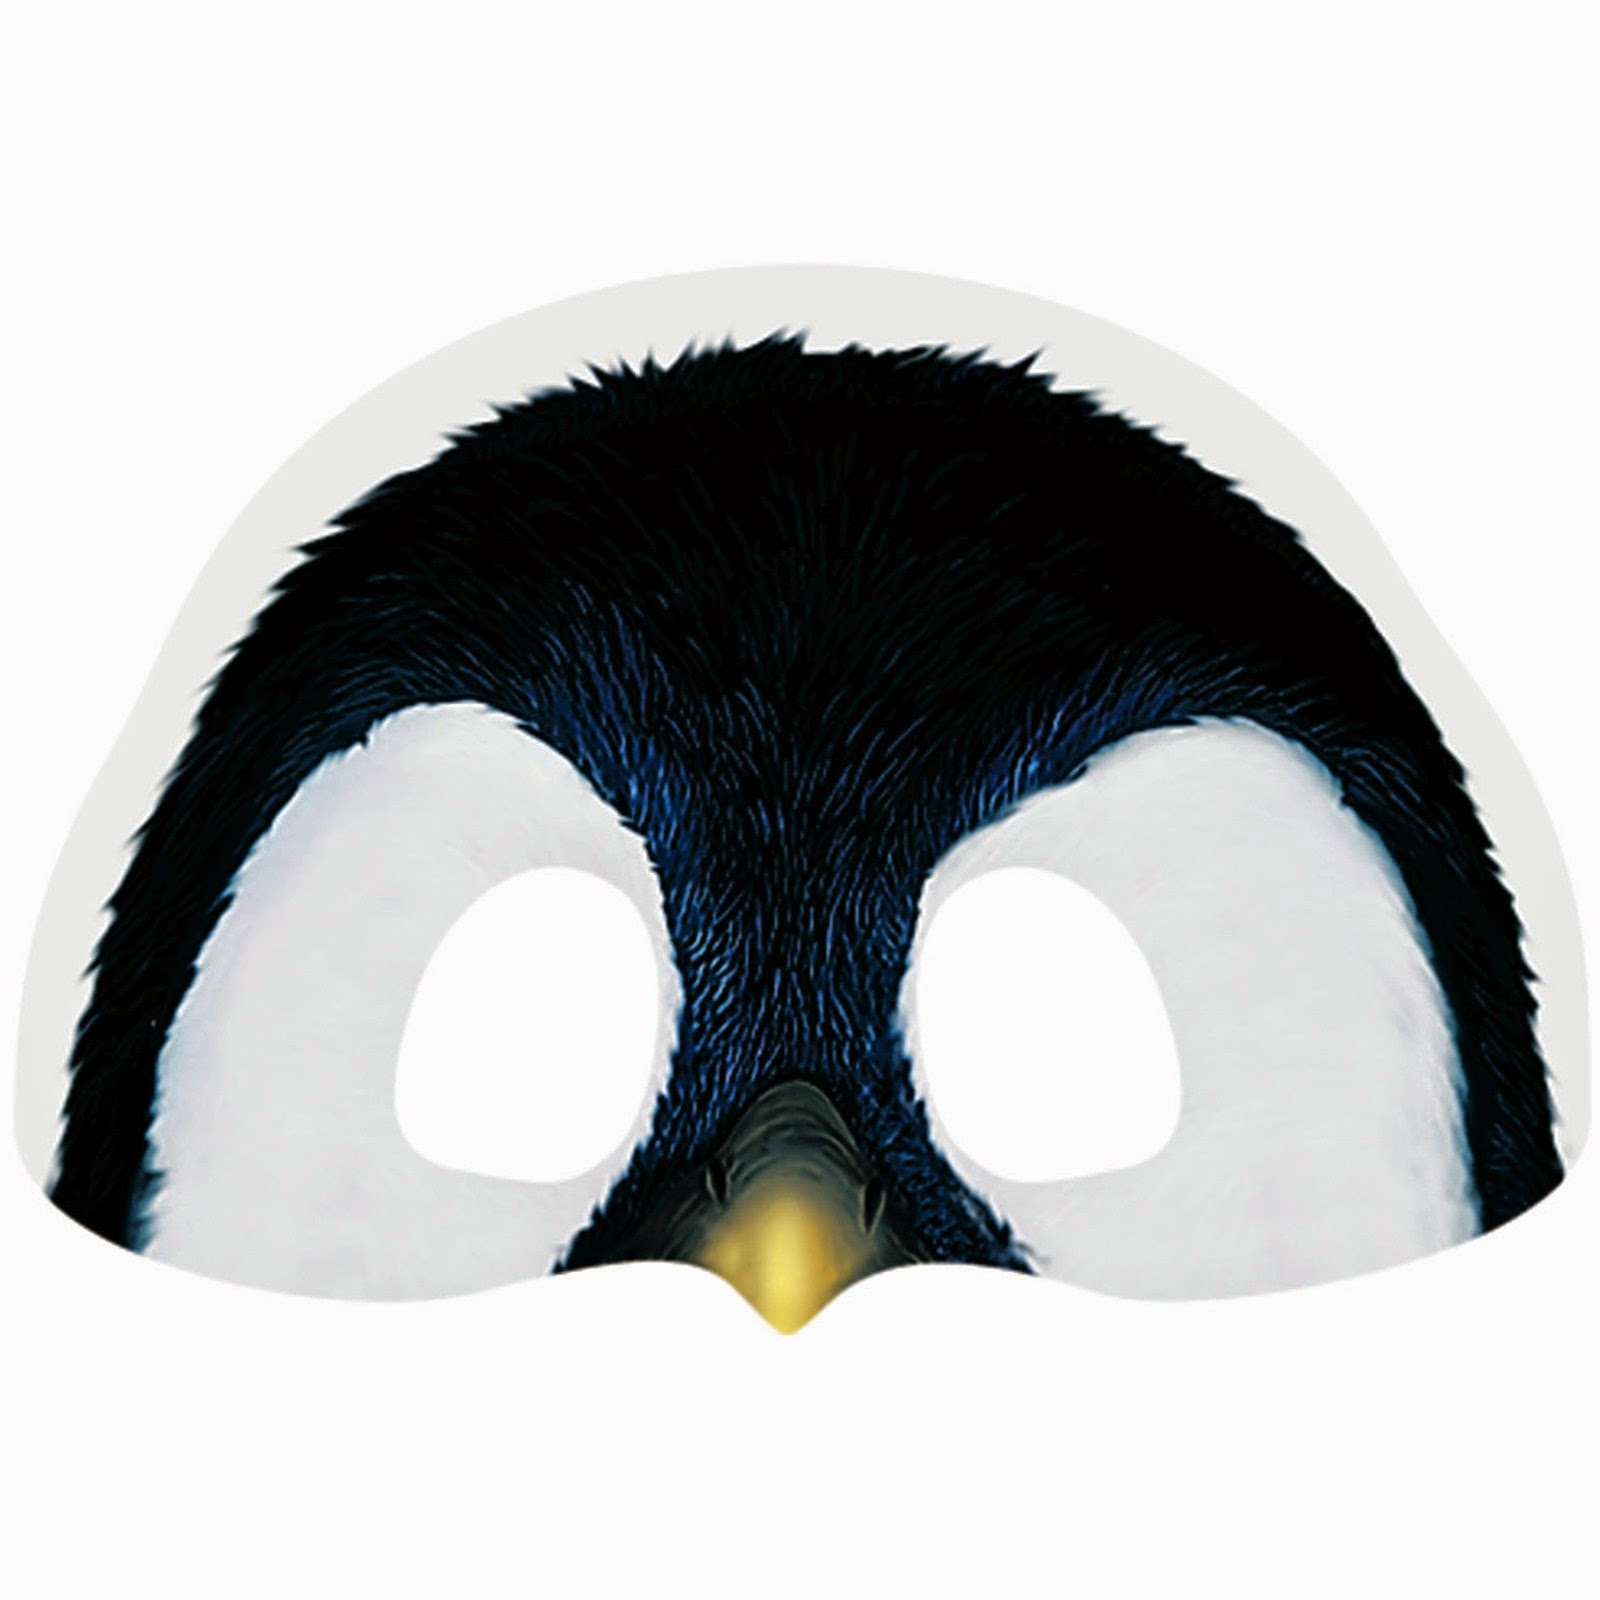 Máscara/Pingüino-Hecho a Mano apoyo a #ReQuest 2021 